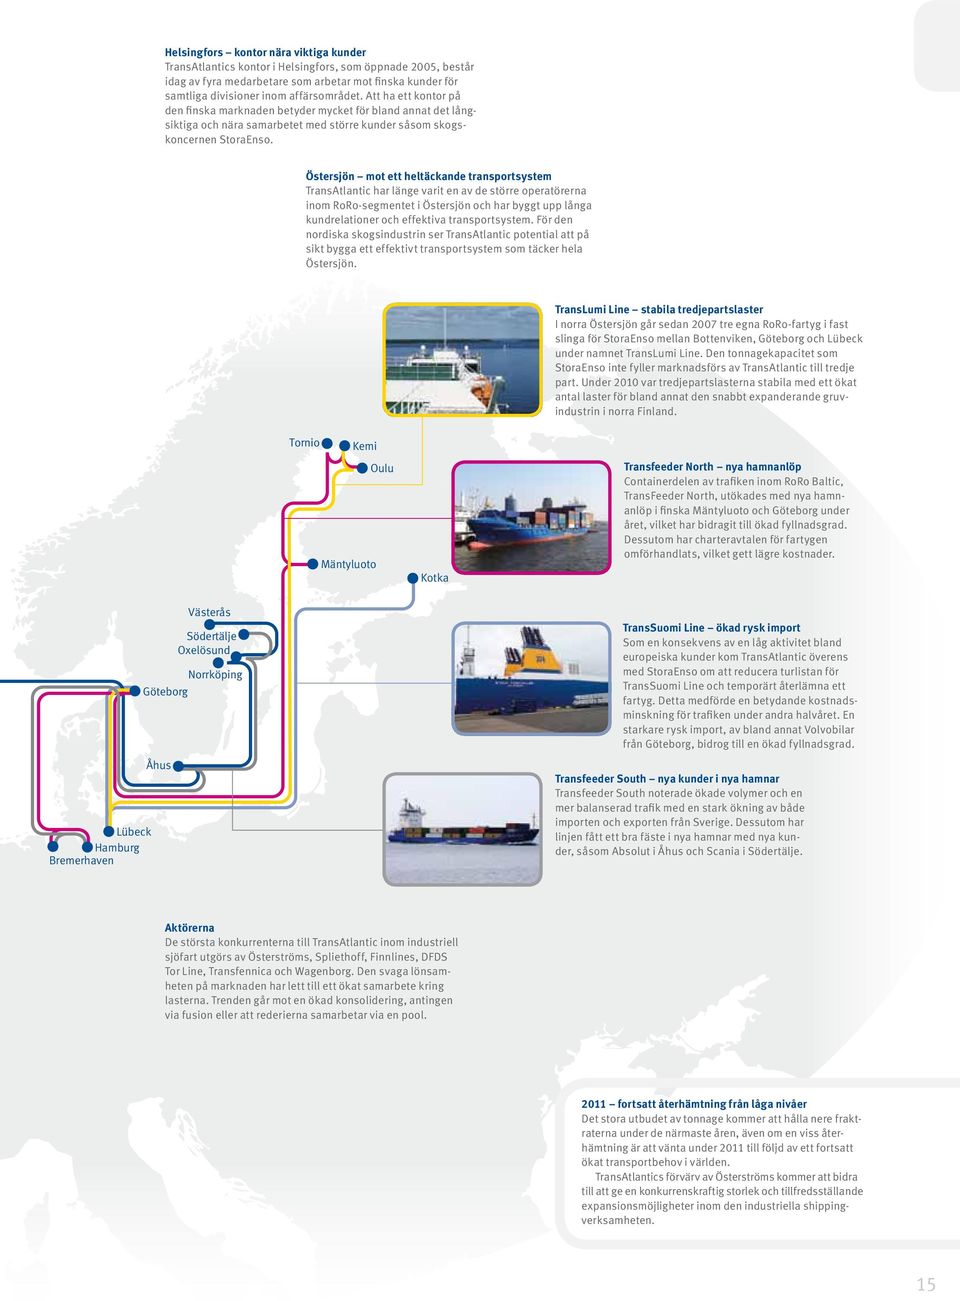 Östersjön mot ett heltäckande transportsystem TransAtlantic har länge varit en av de större operatörerna inom RoRo-segmentet i Östersjön och har byggt upp långa kundrelationer och effektiva